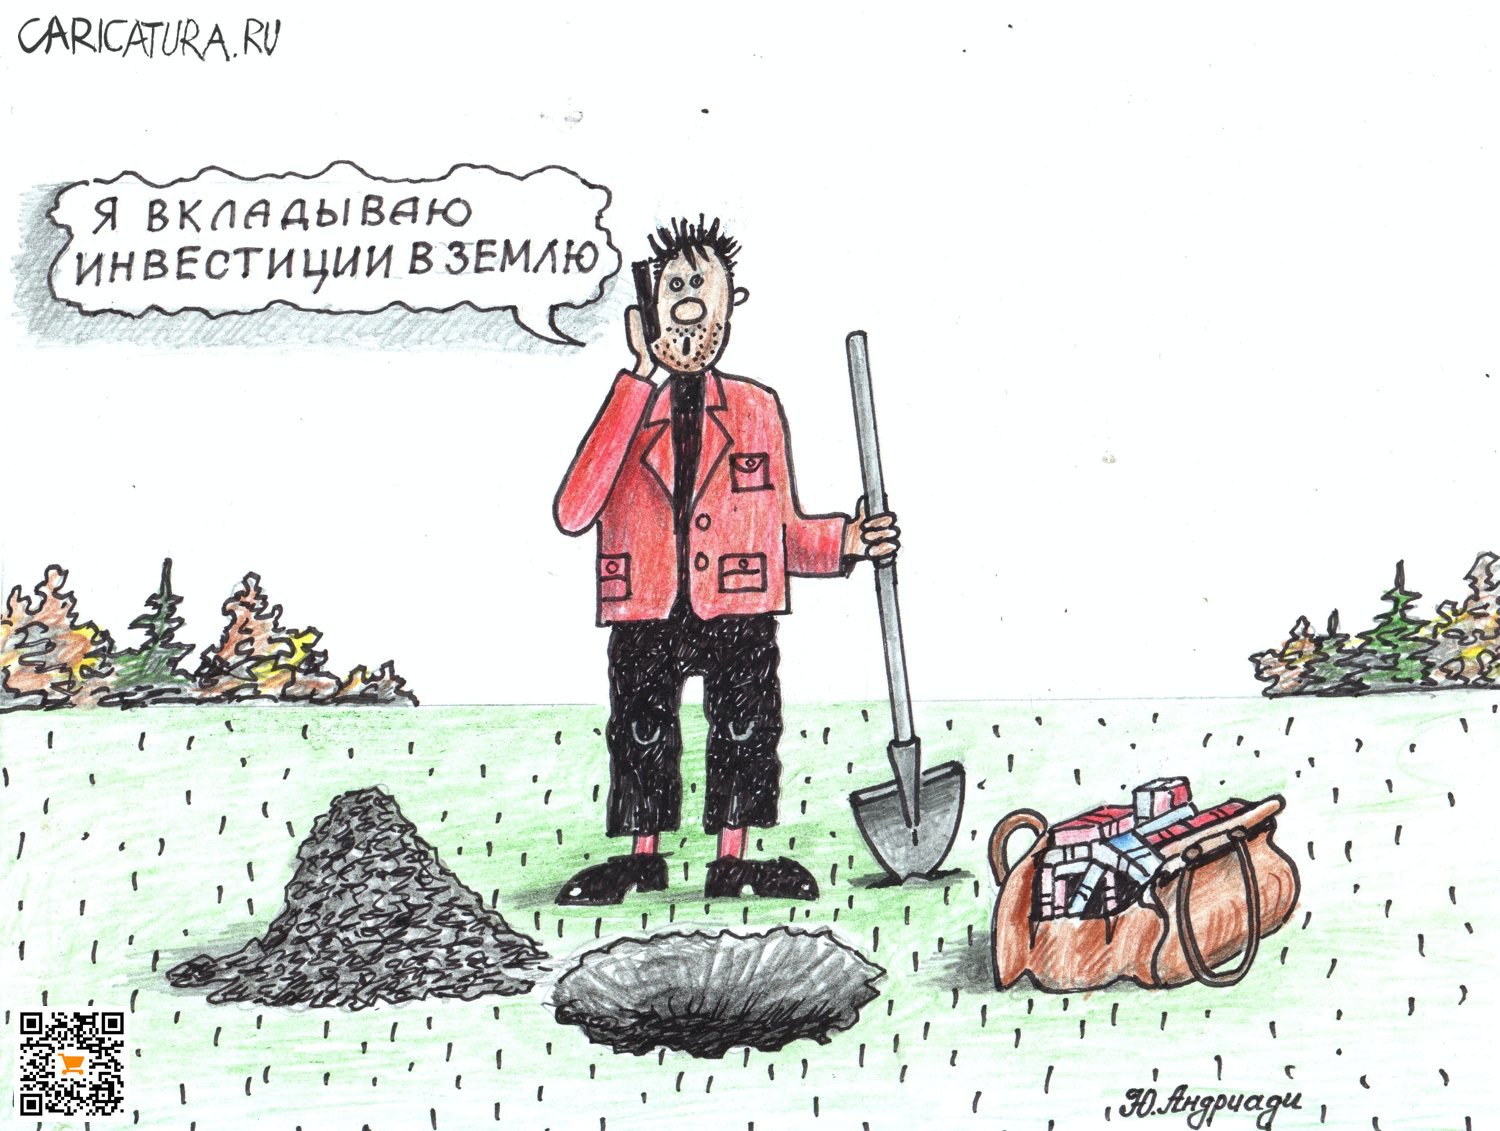 Карикатура "Инвестиции в землю", Юрий Андриади